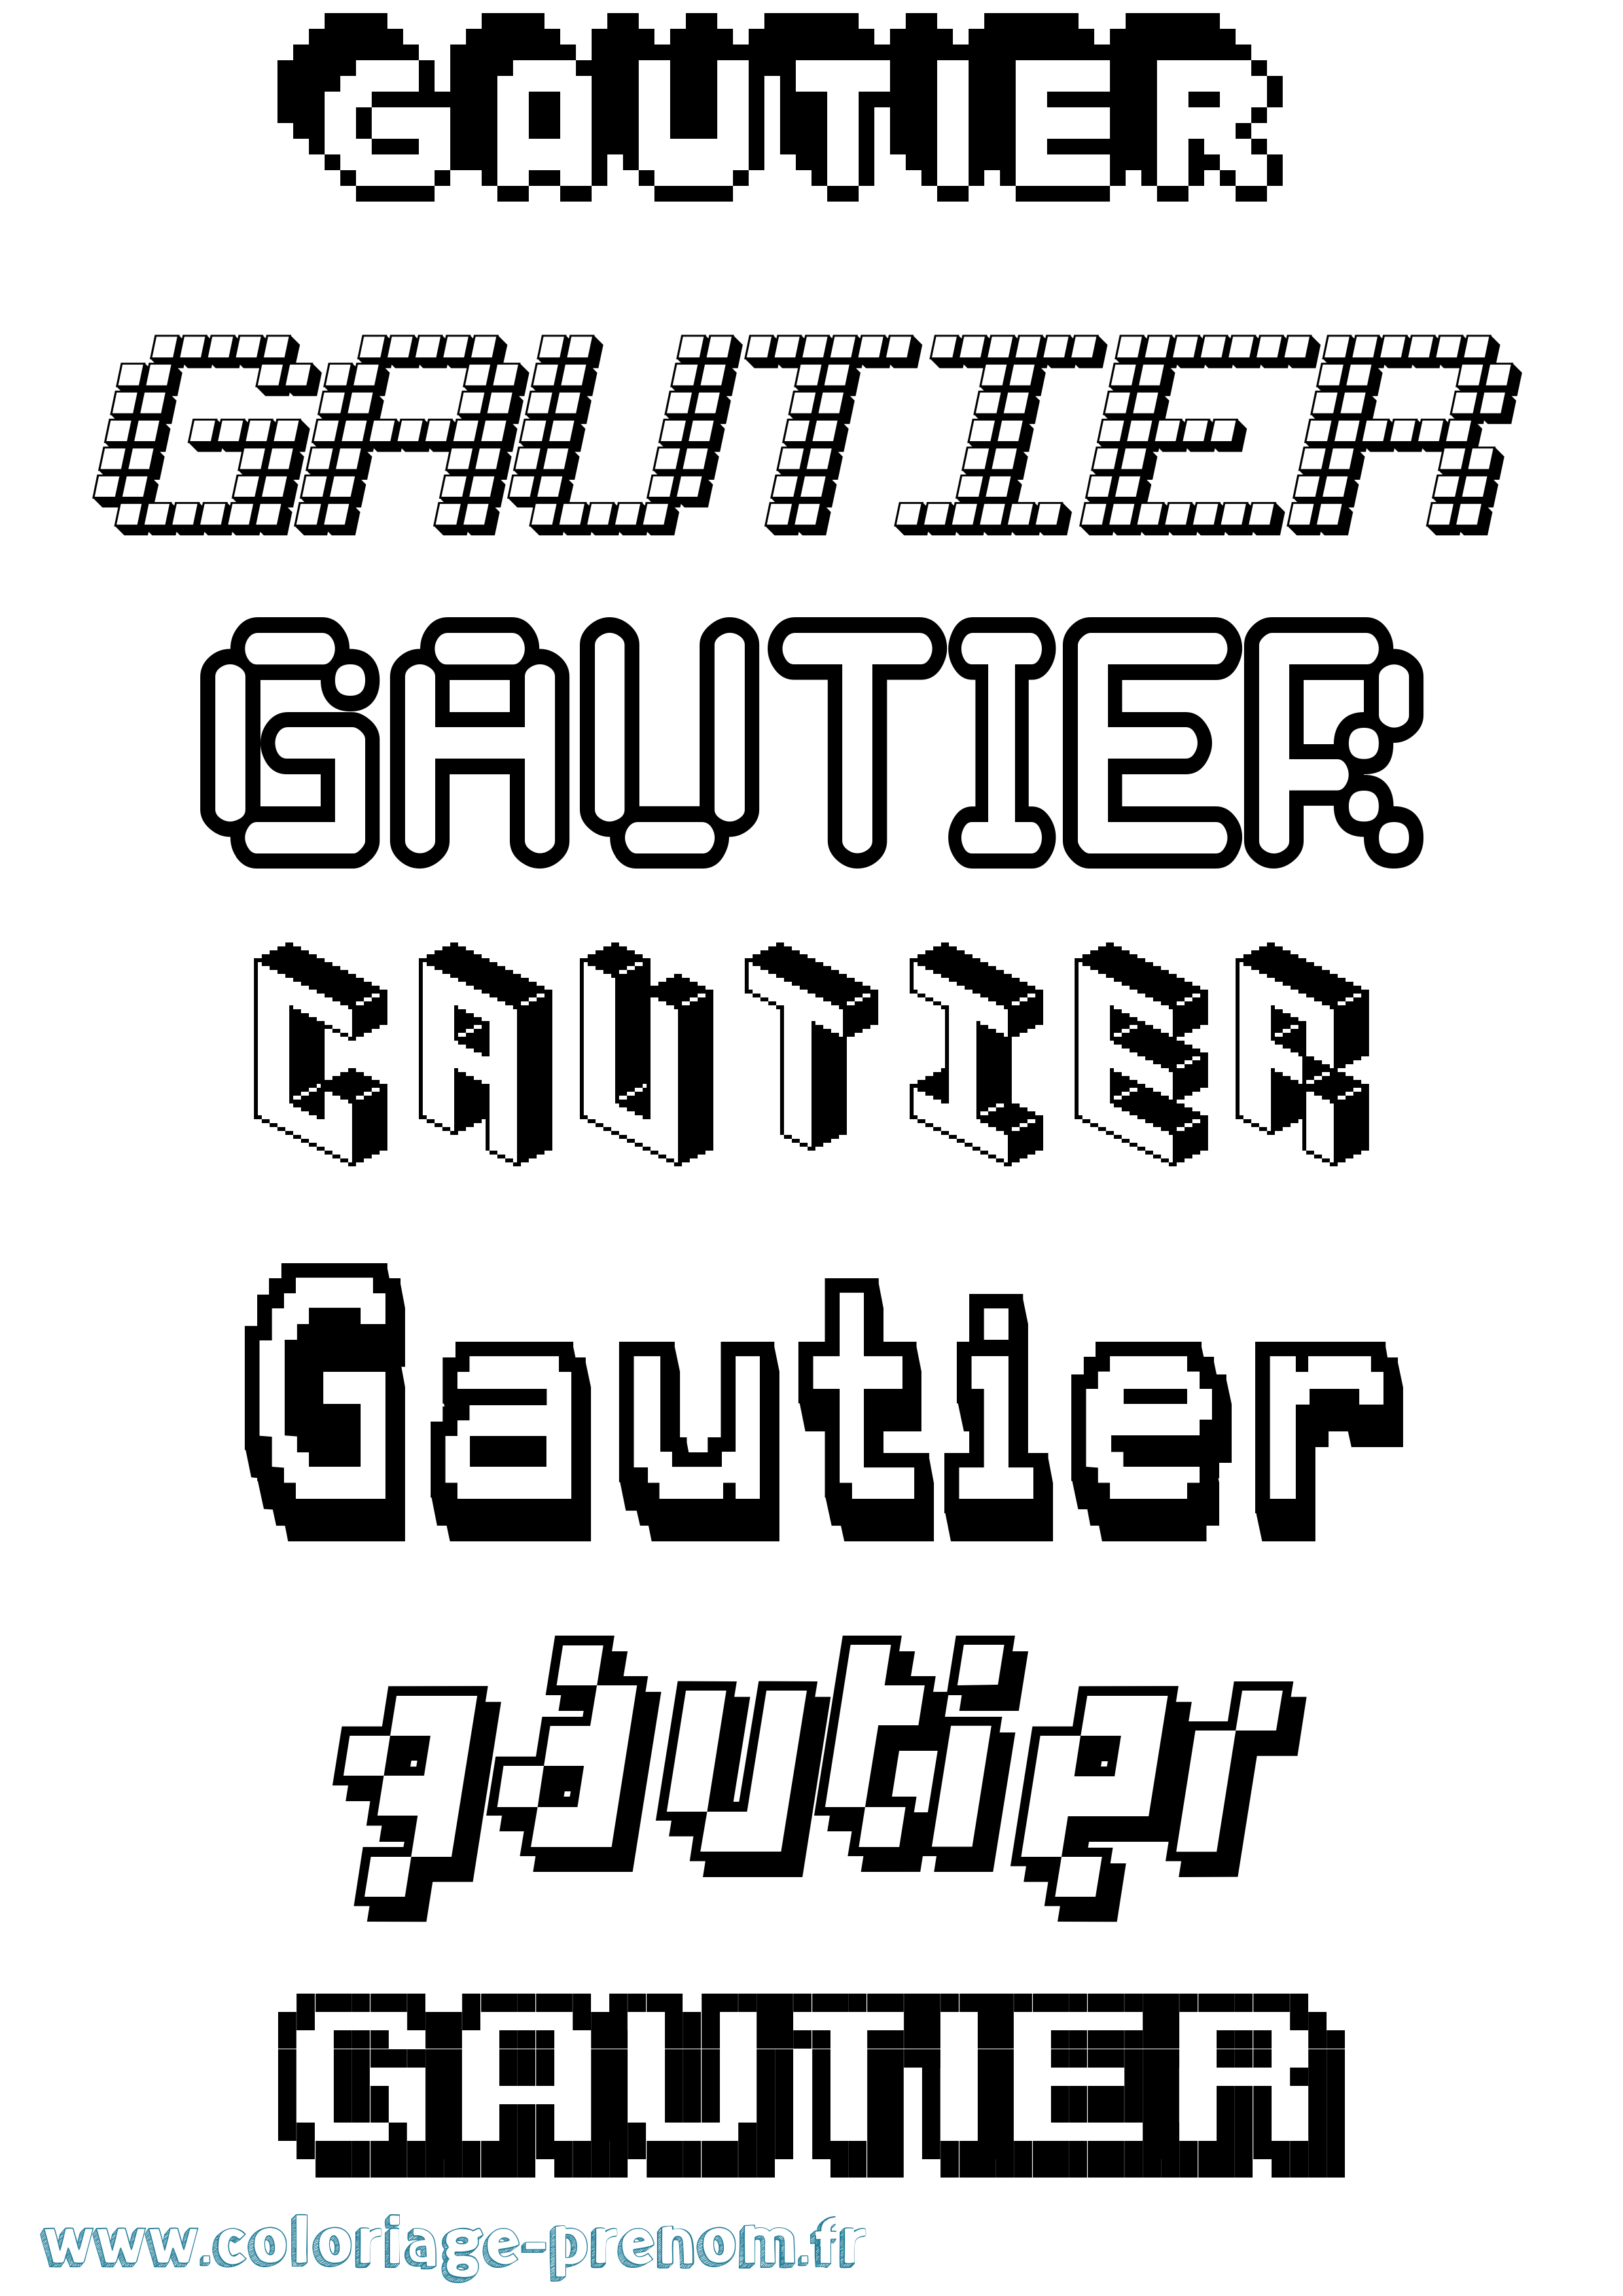 Coloriage prénom Gautier